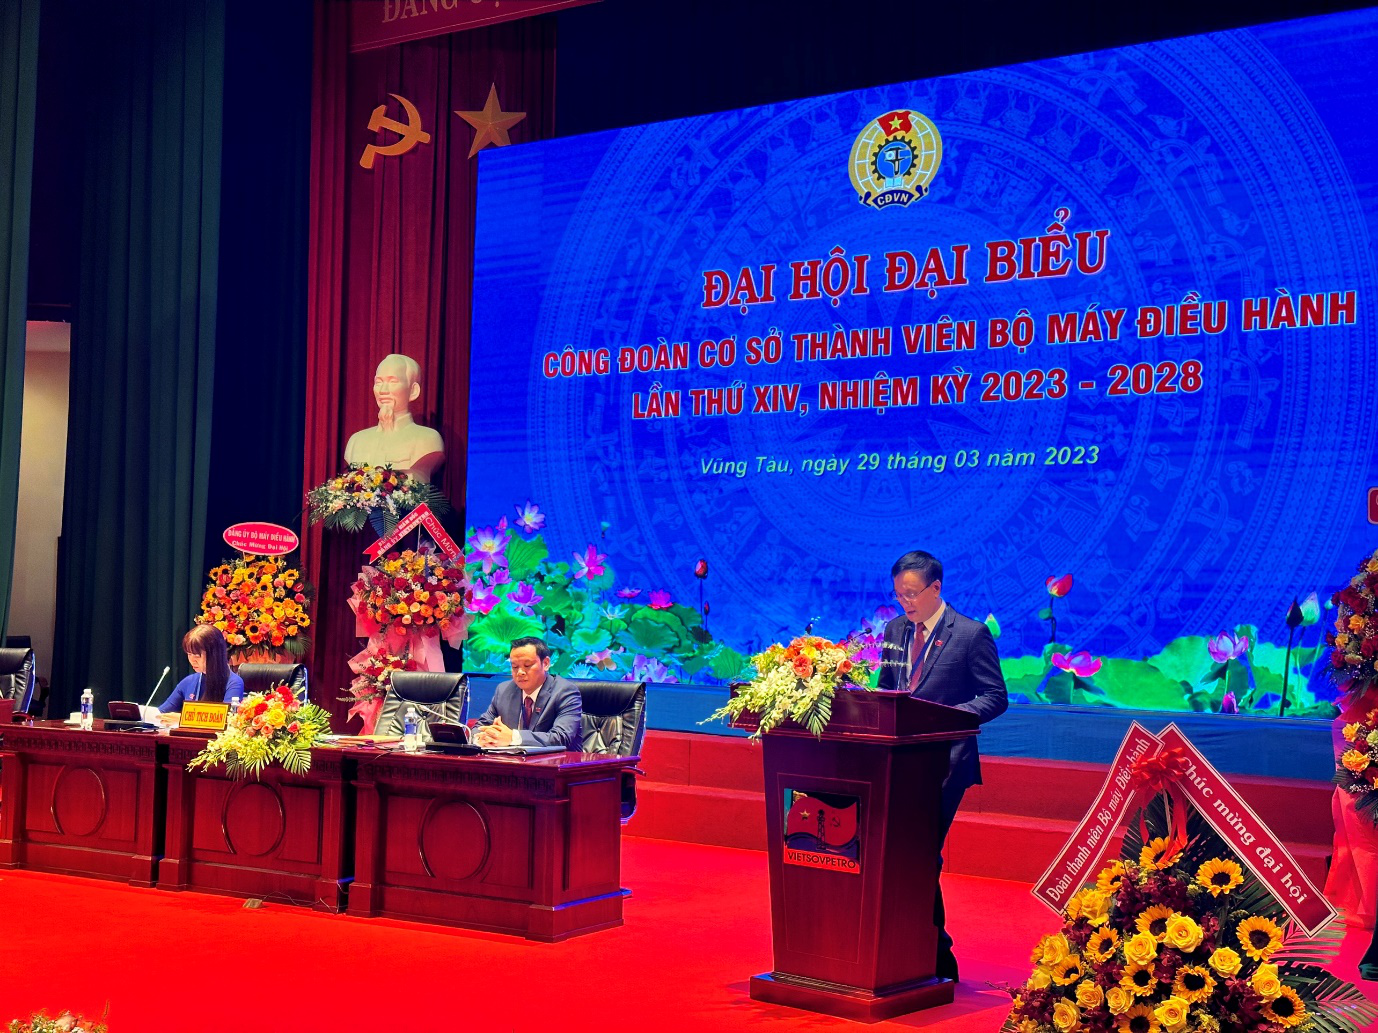 Đồng chí Nguyễn Quang Mạnh - Chủ tịch Công đoàn BMĐH tổng kết những dấu ấn trong hành trình nhiệm kỳ vừa qua của Công đoàn BMĐH và những định hướng trong nhiệm kỳ tới